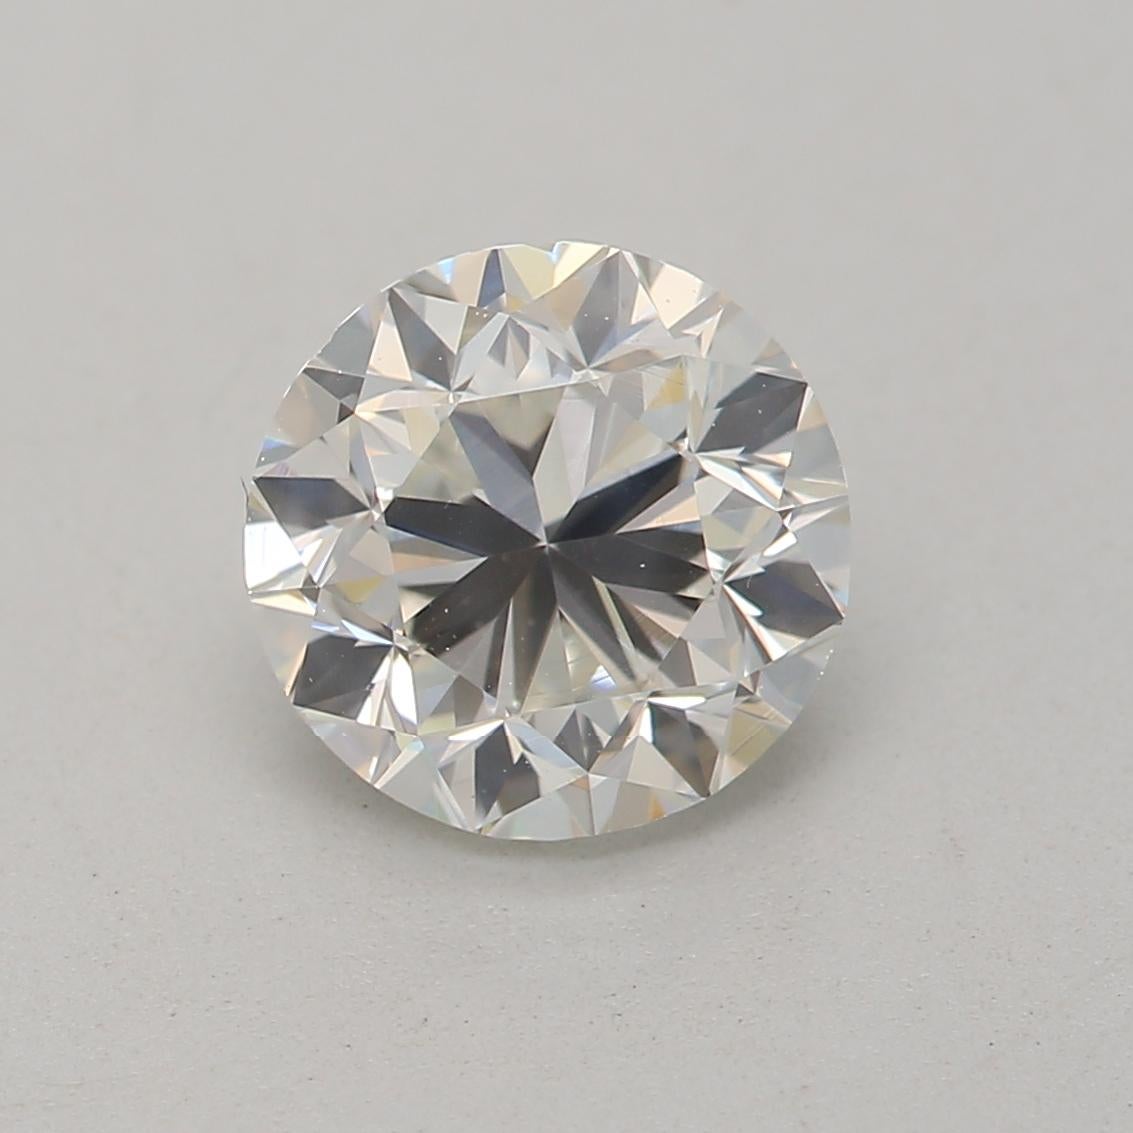 *100% NATÜRLICHE FANCY-DIAMANTEN*

Diamant Details

➛ Form: Rund
➛ Farbgrad: H
➛ Karat: 1.00
➛ Klarheit: VS2
➛ GIA zertifiziert 

^MERKMALE DES DIAMANTEN^

Unser 1-Karat-Diamant ist ein Diamant mit einem Gewicht von etwa 200 Milligramm. Das Karat